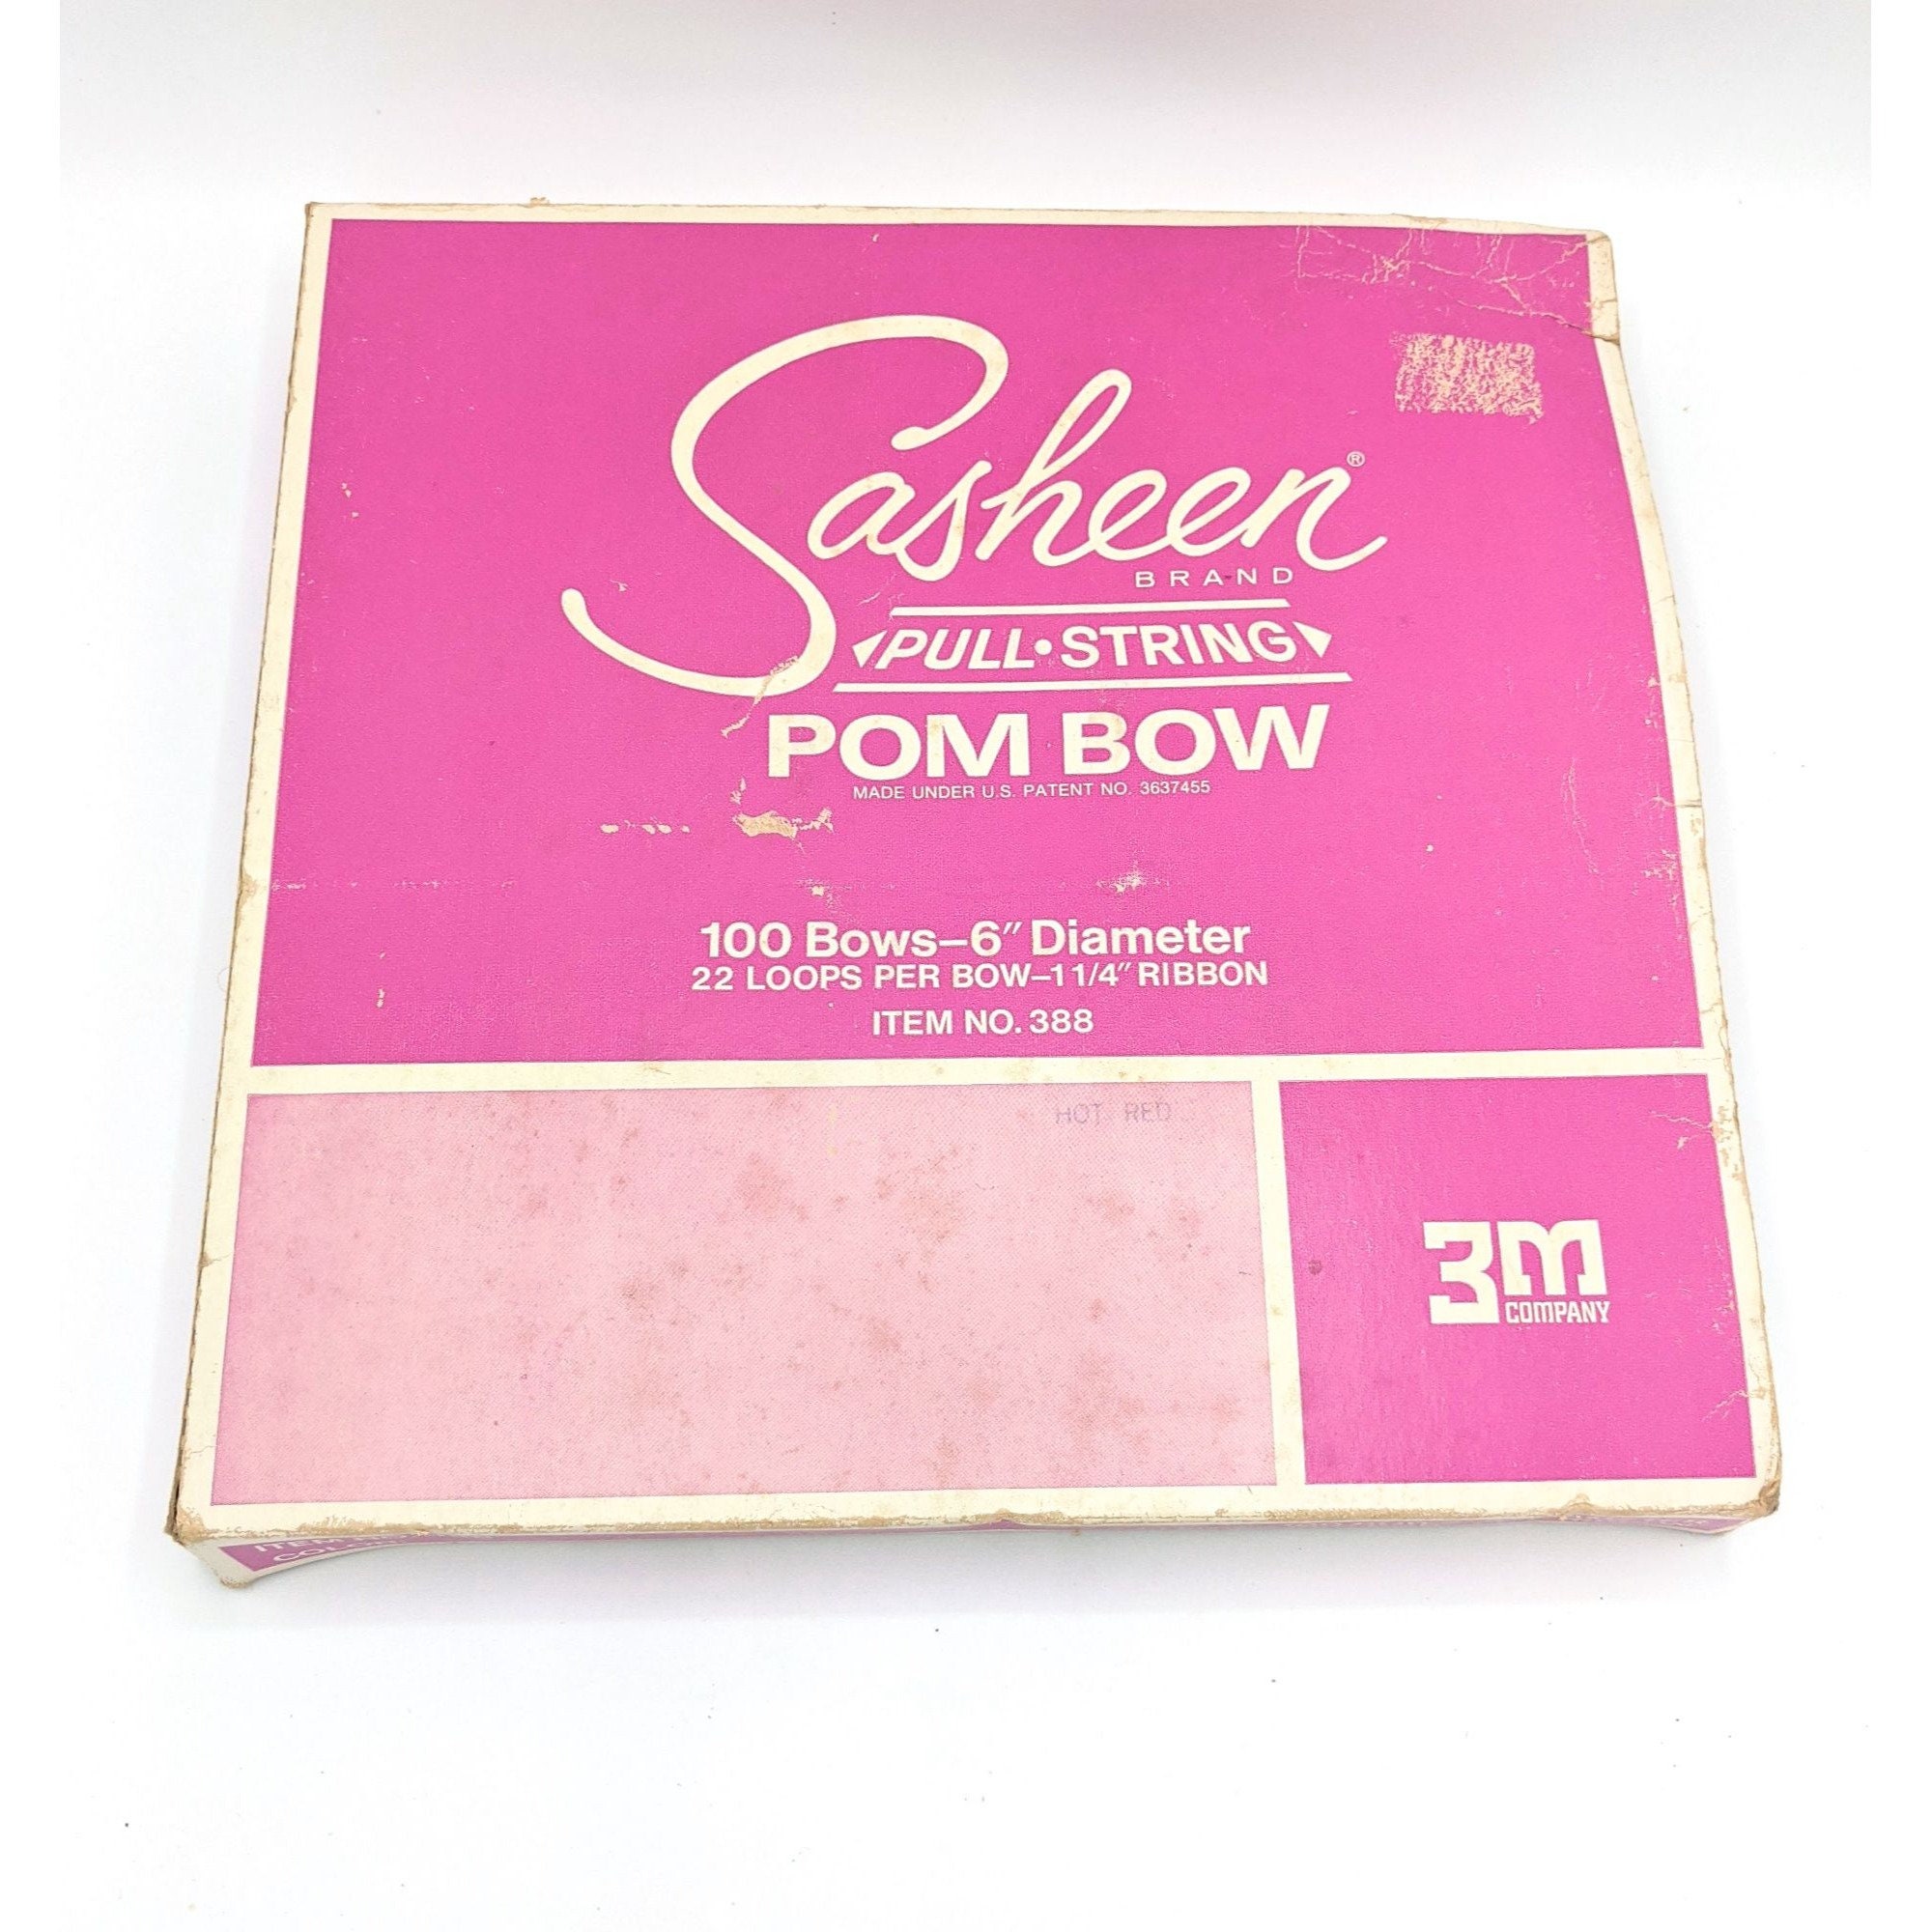 Ribbon Magic Bow Maker, Gift Bows, Holiday Bows, Hair Bows, Cards